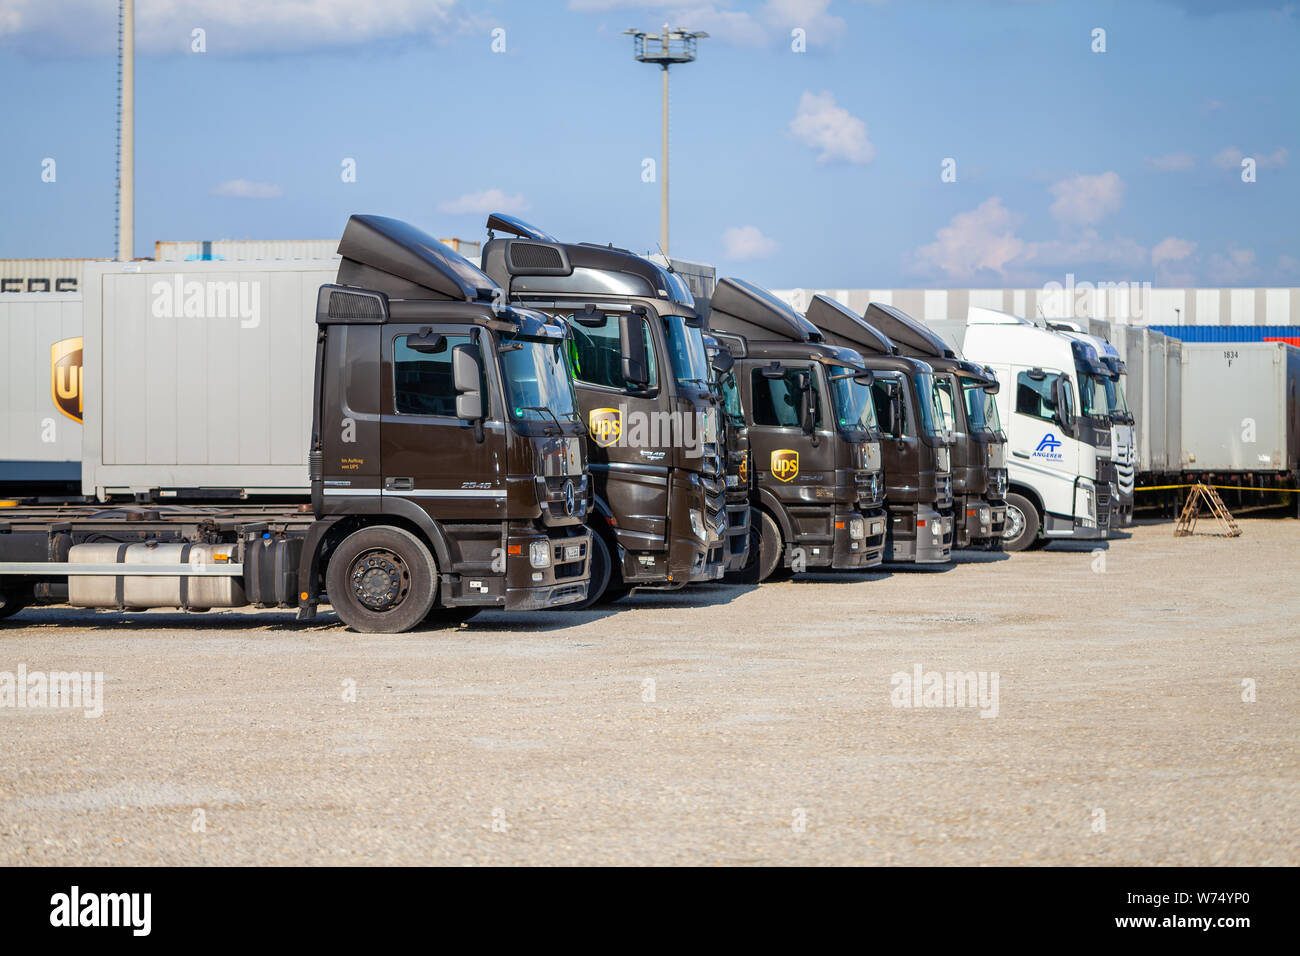 Nürnberg/Deutschland - August 4, 2019: Verschiedene Lkw aus dem amerikanischen multinationalen Paketzustellung, United Parcel Service (UPS), steht in der Nähe von Cont Stockfoto